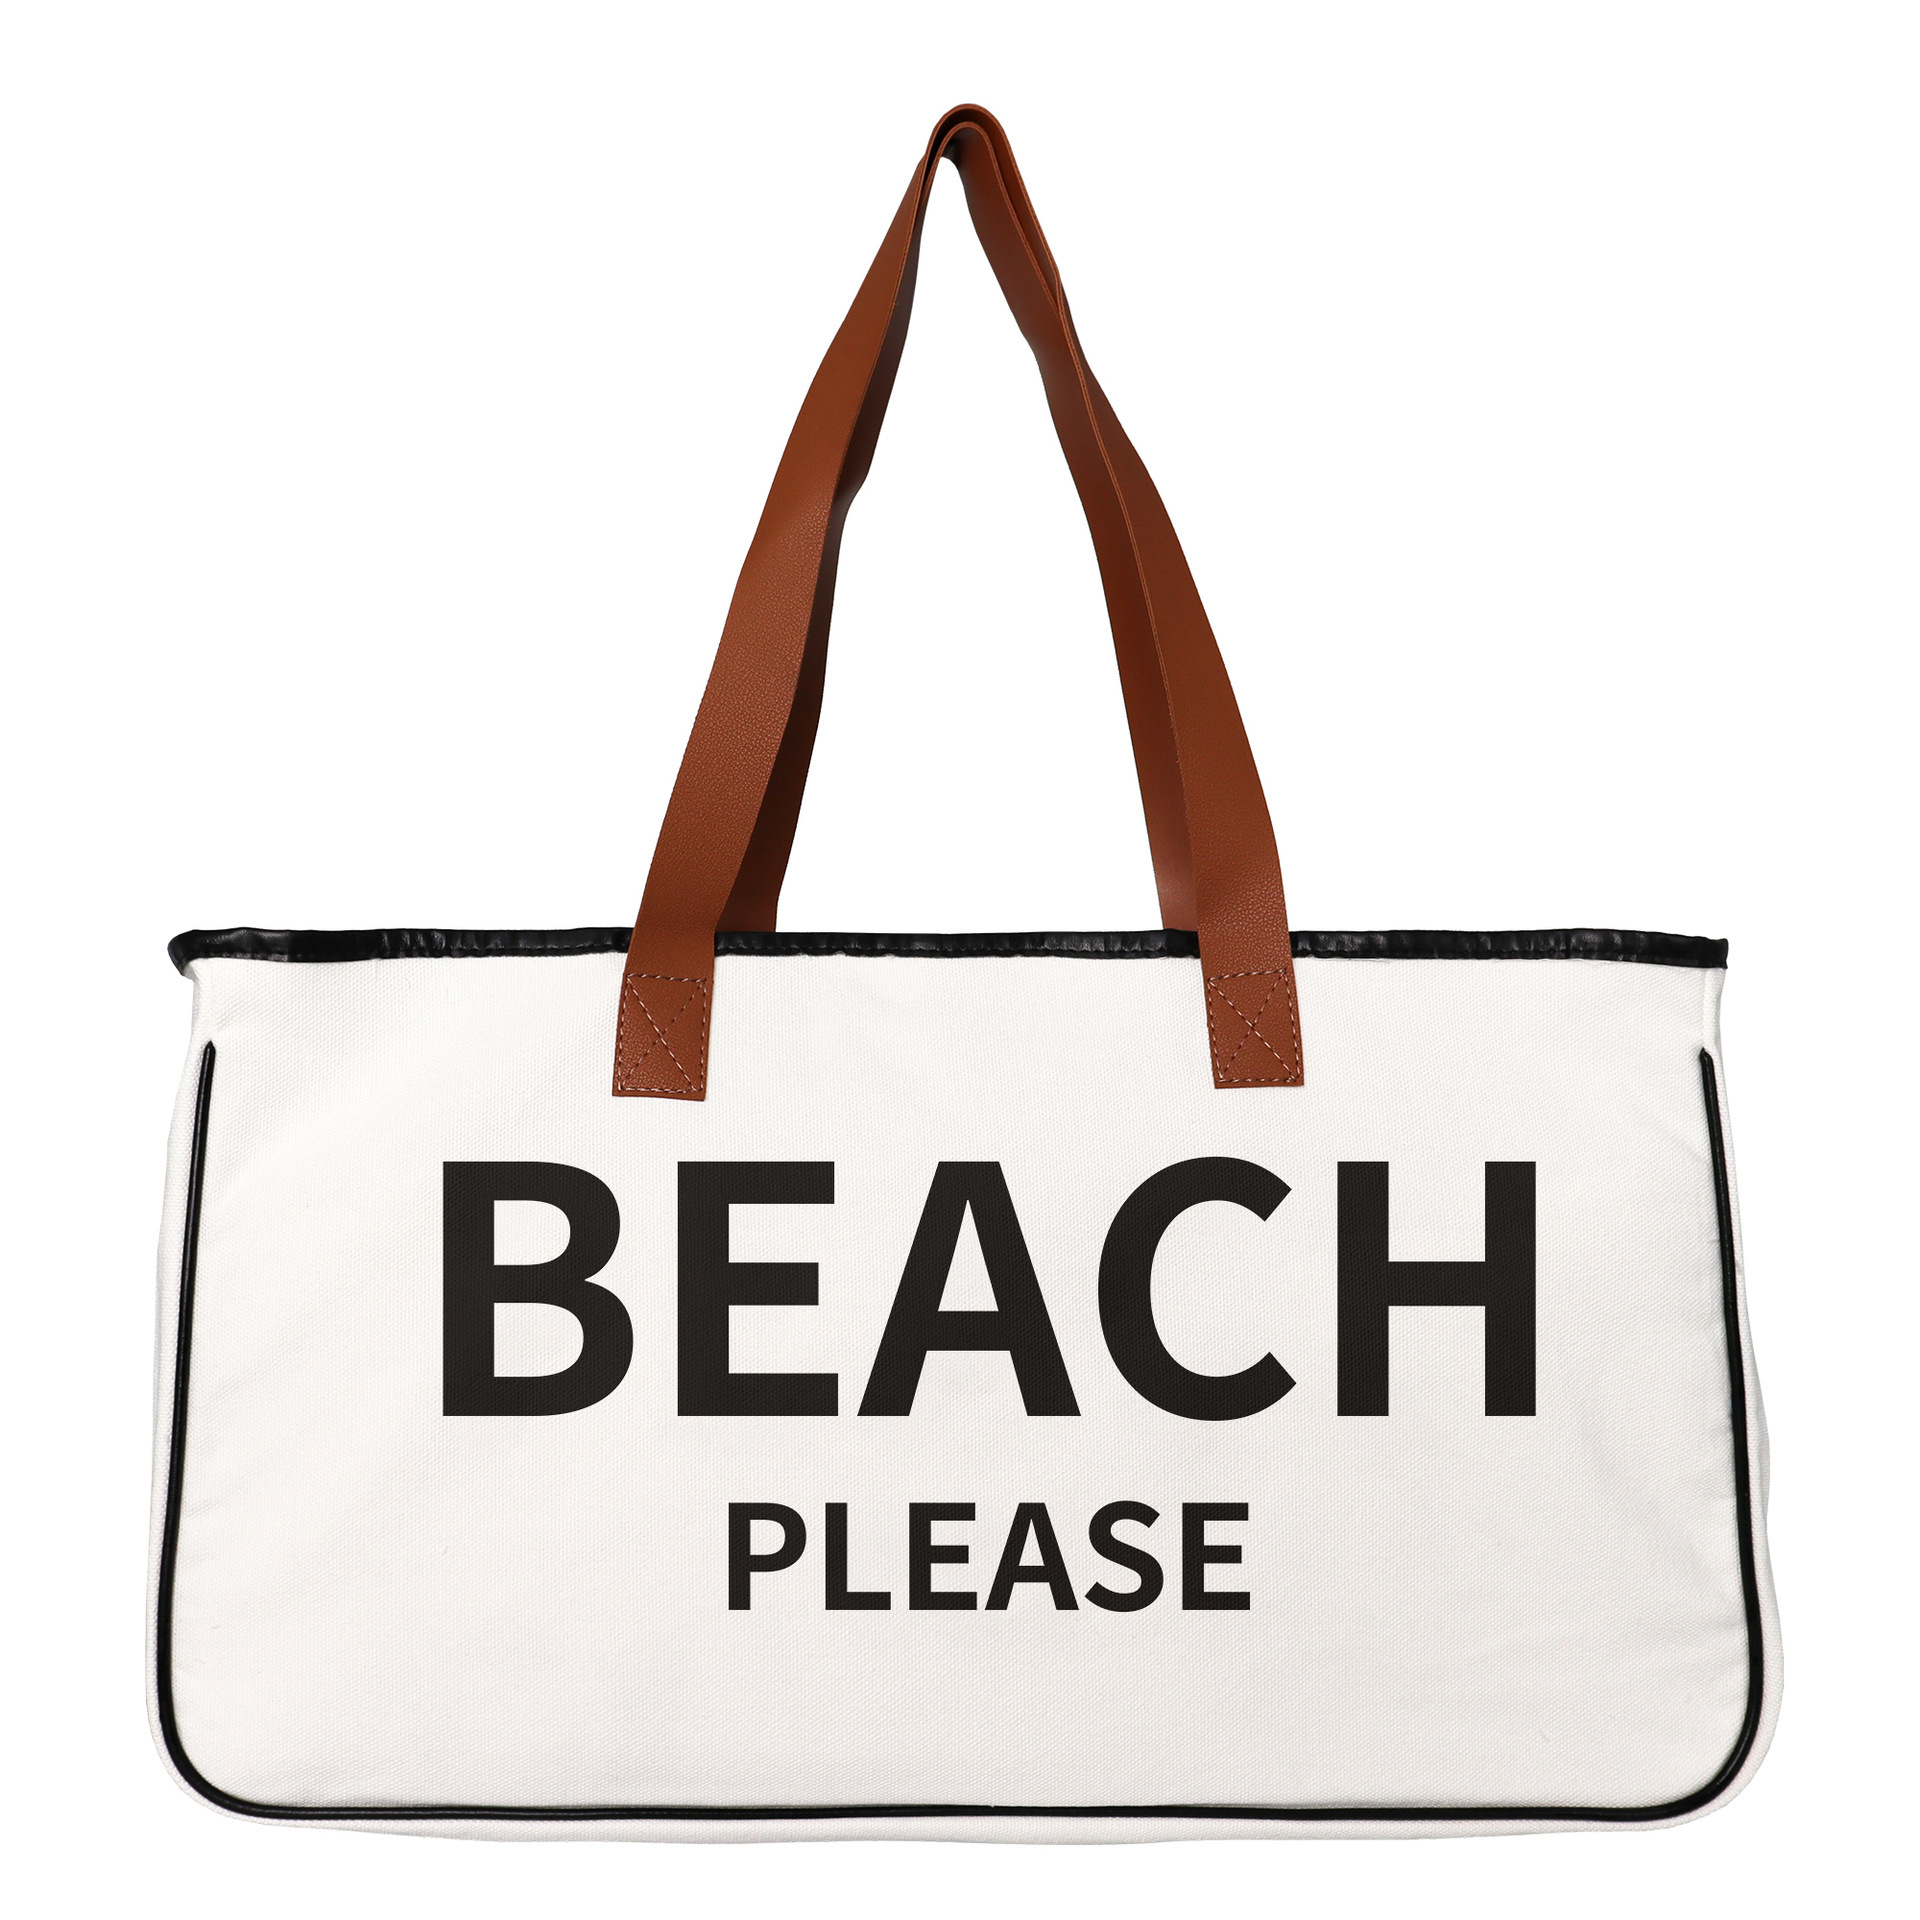 BEACH PLEASE